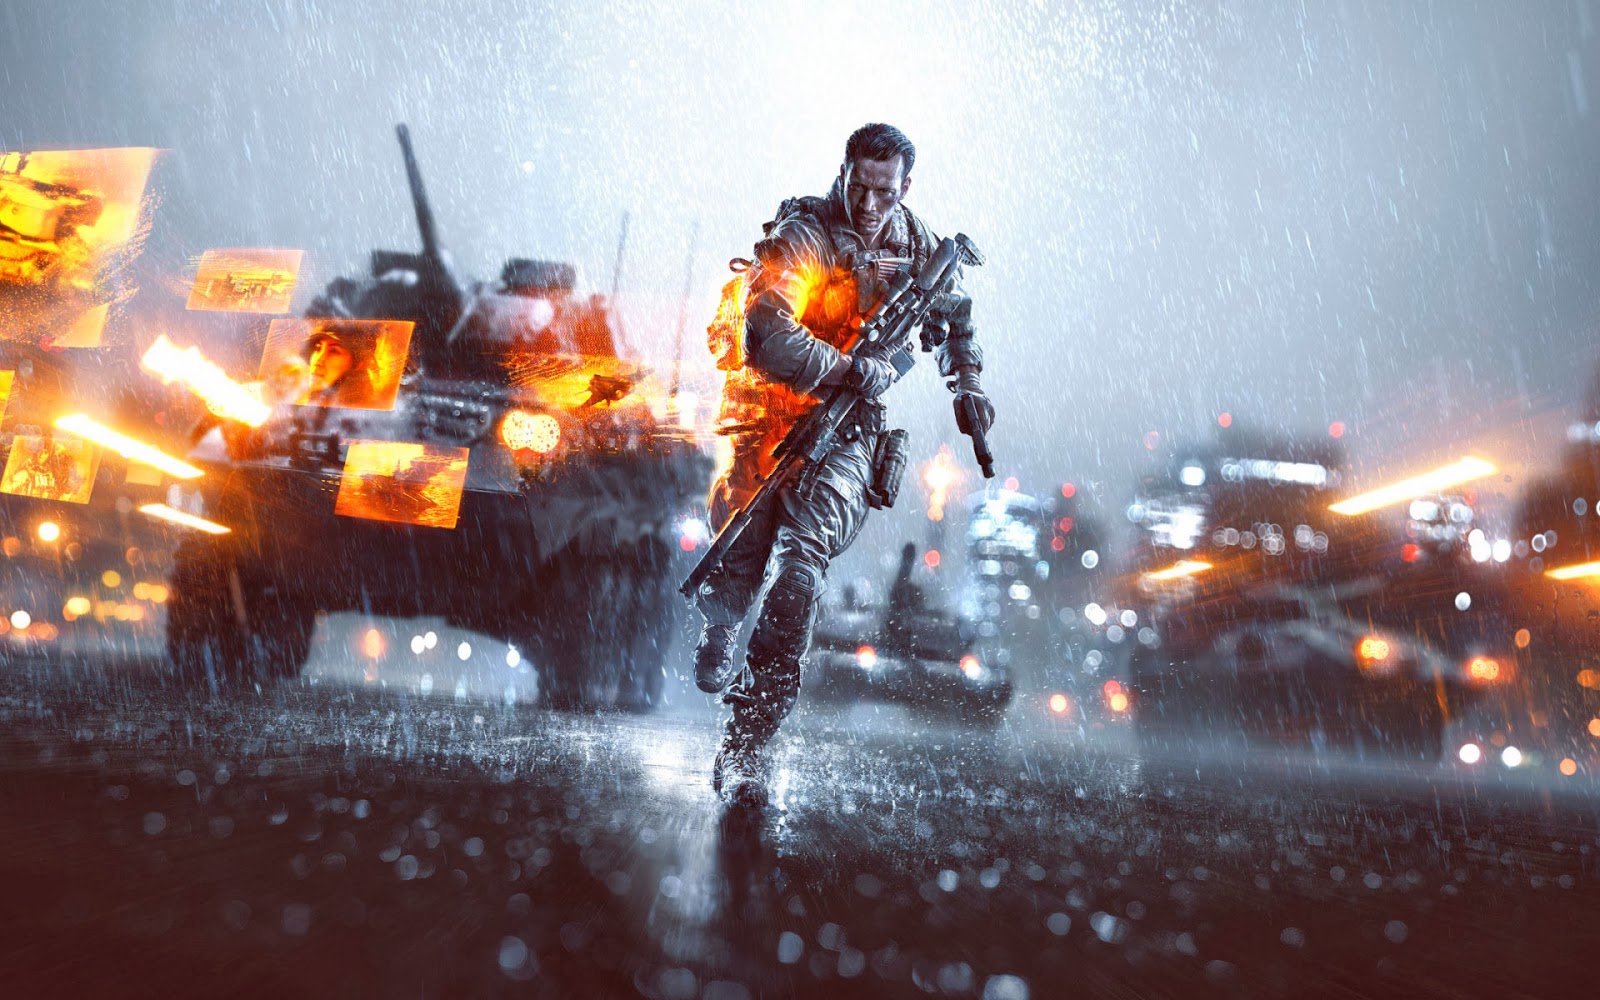 Game Battlefield 4 wallpaper met een rennende soldaat met